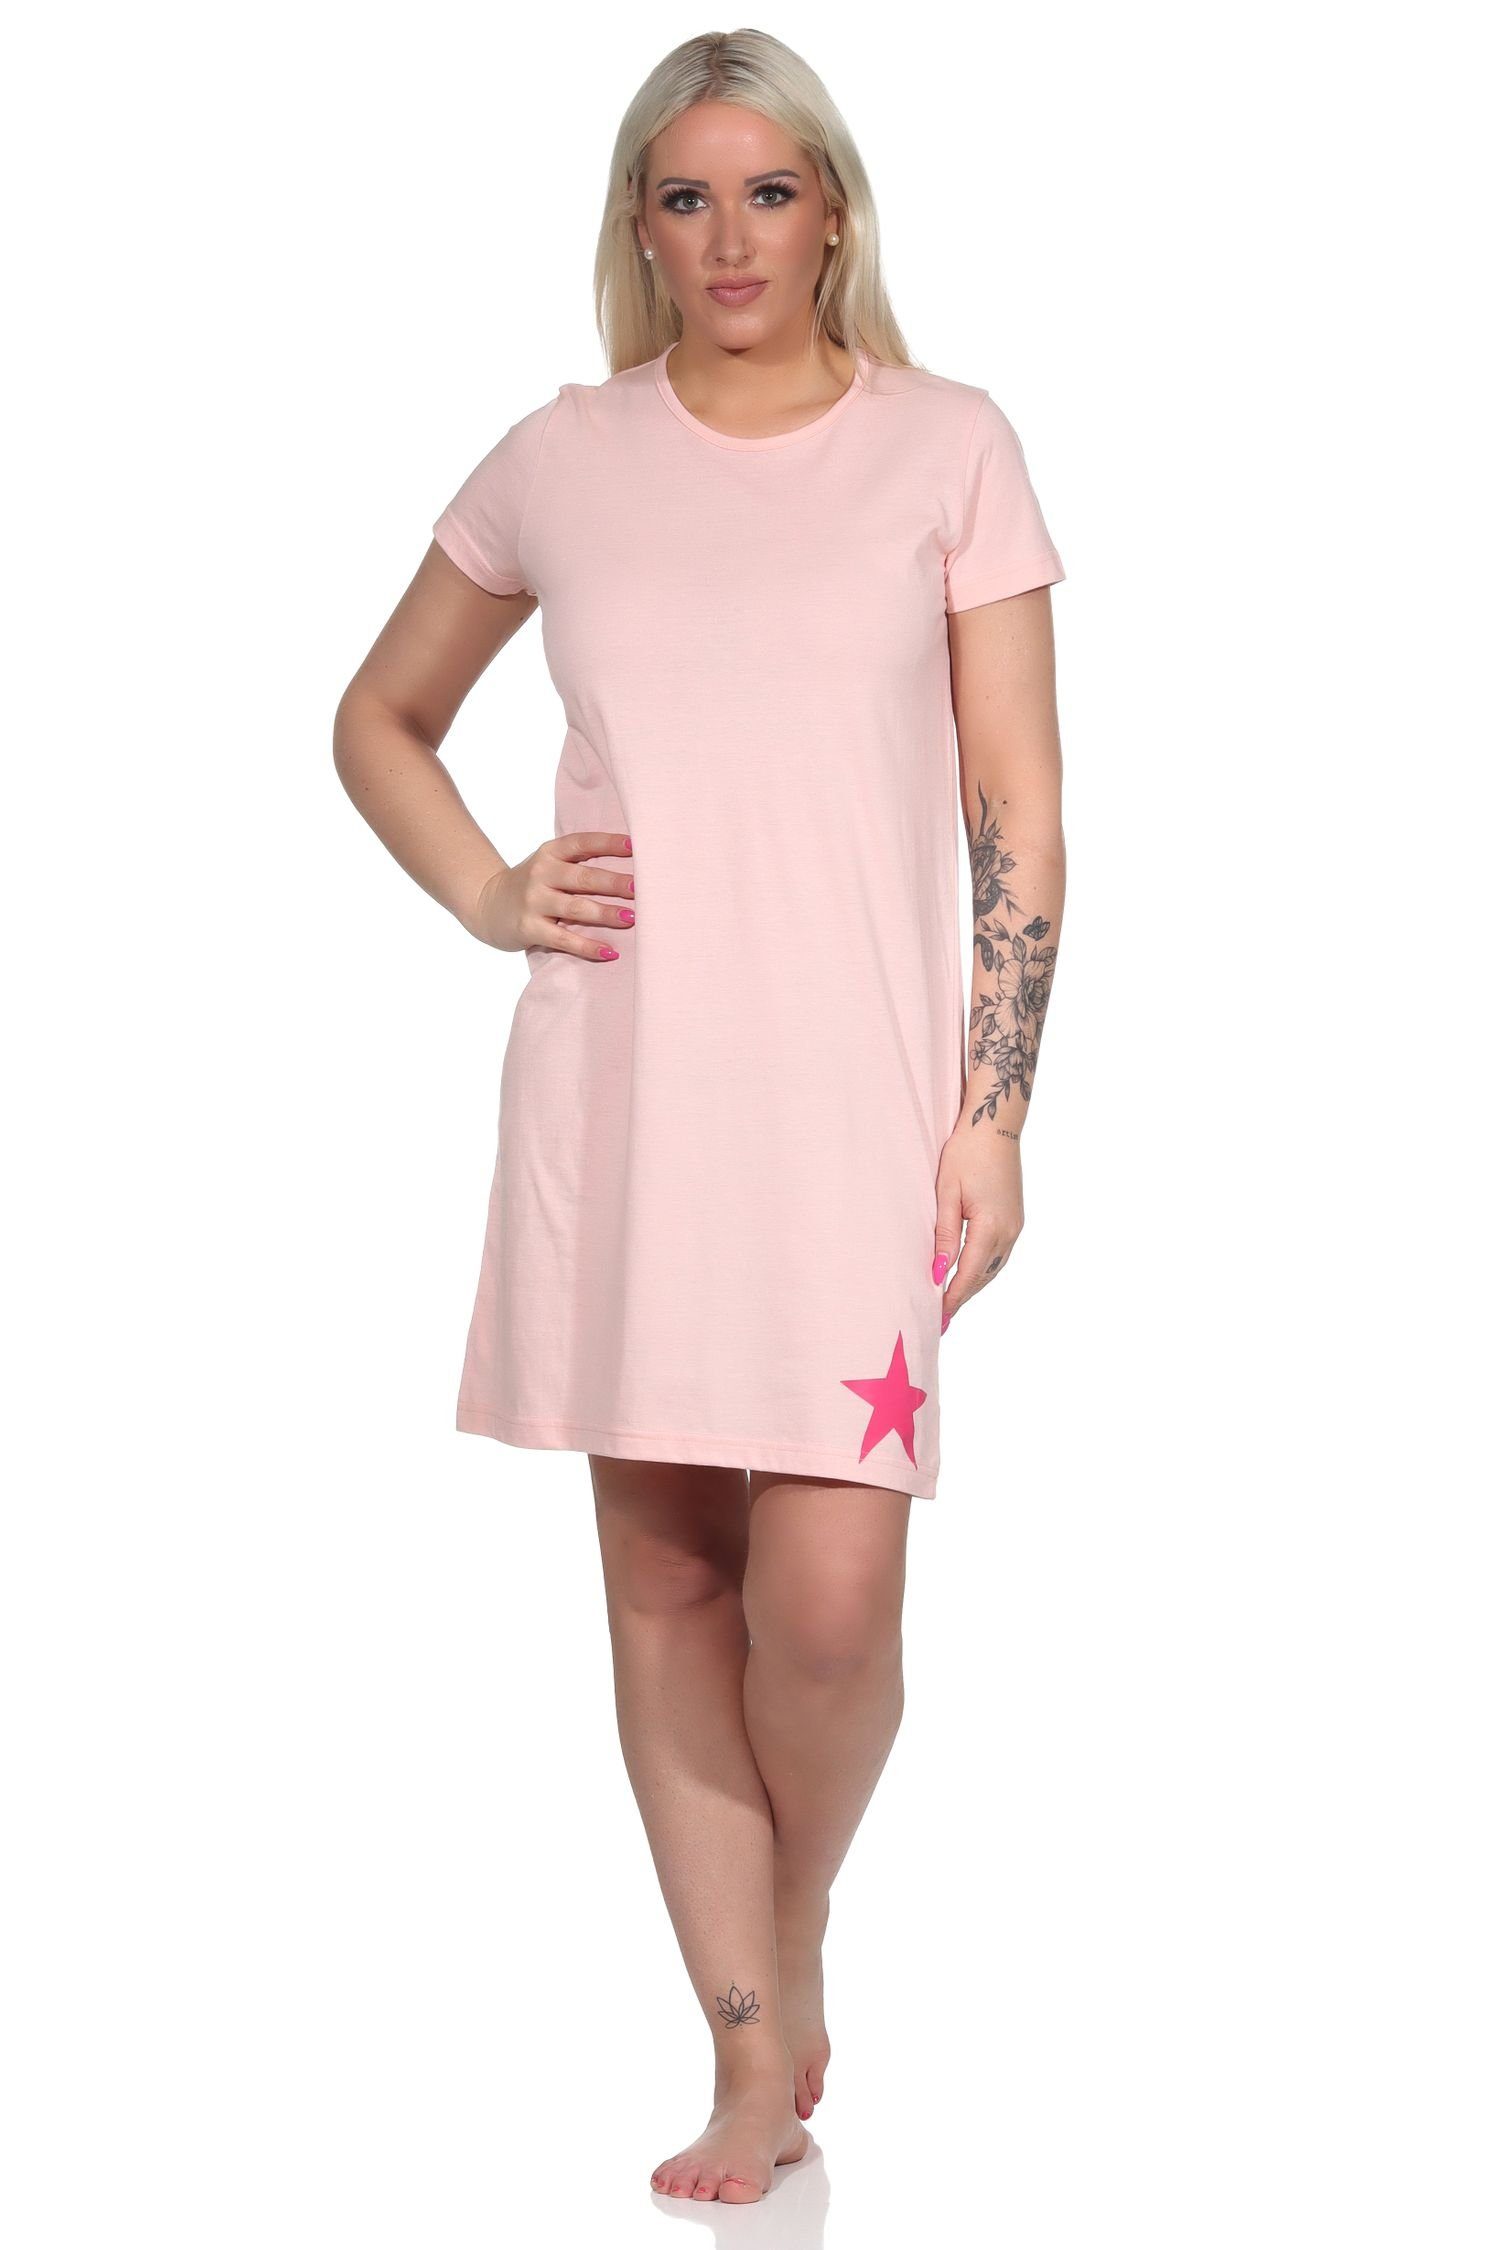 Normann Nachthemd Damen Kurznachthemd, Bigshirt mit schöner Stern-Applikation rosa